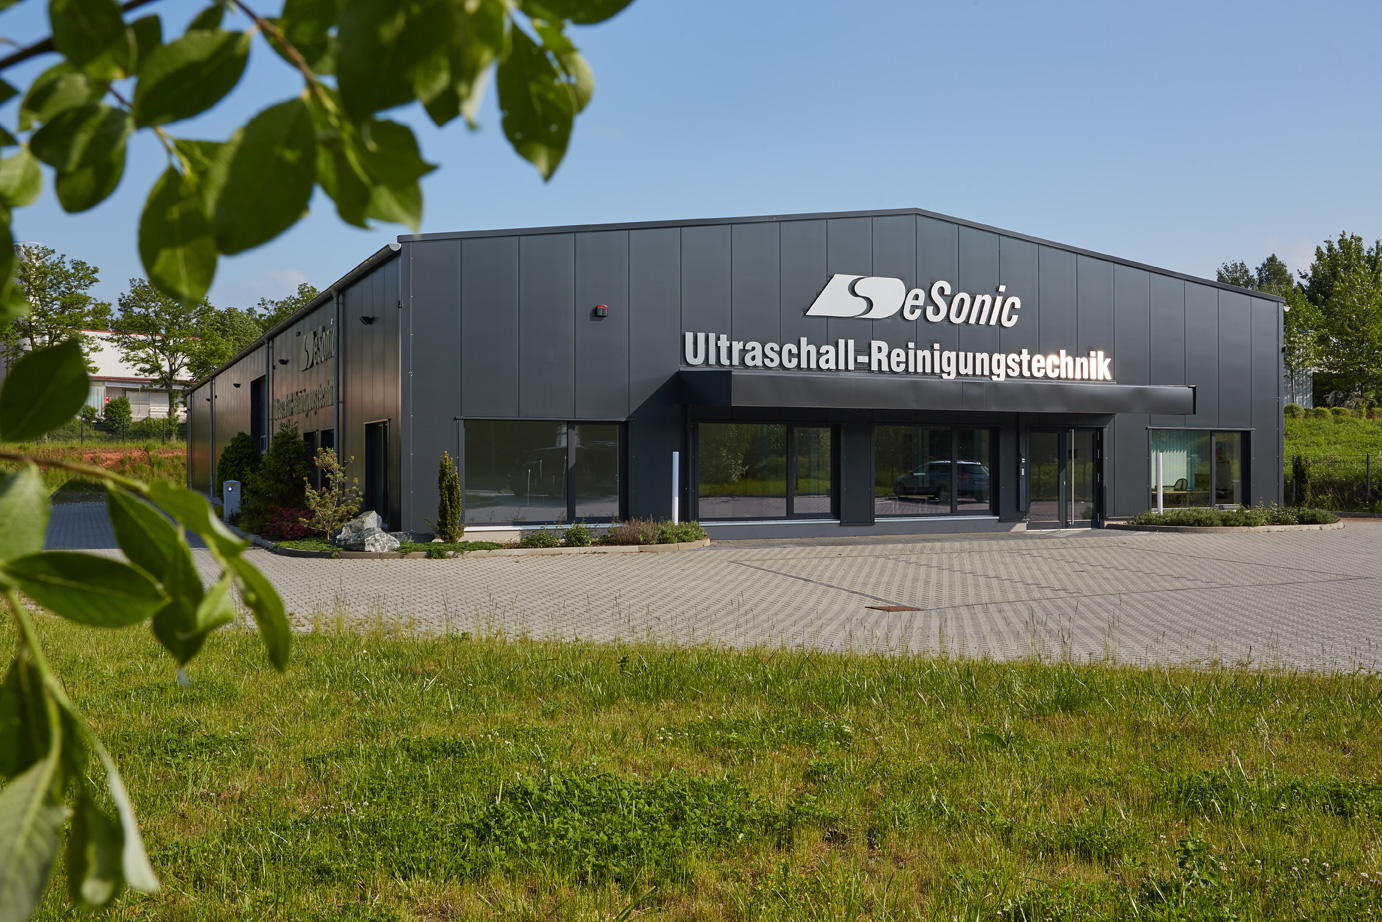 DeSonic GmbH, Mauersbergerstrasse 26 in Chemnitz